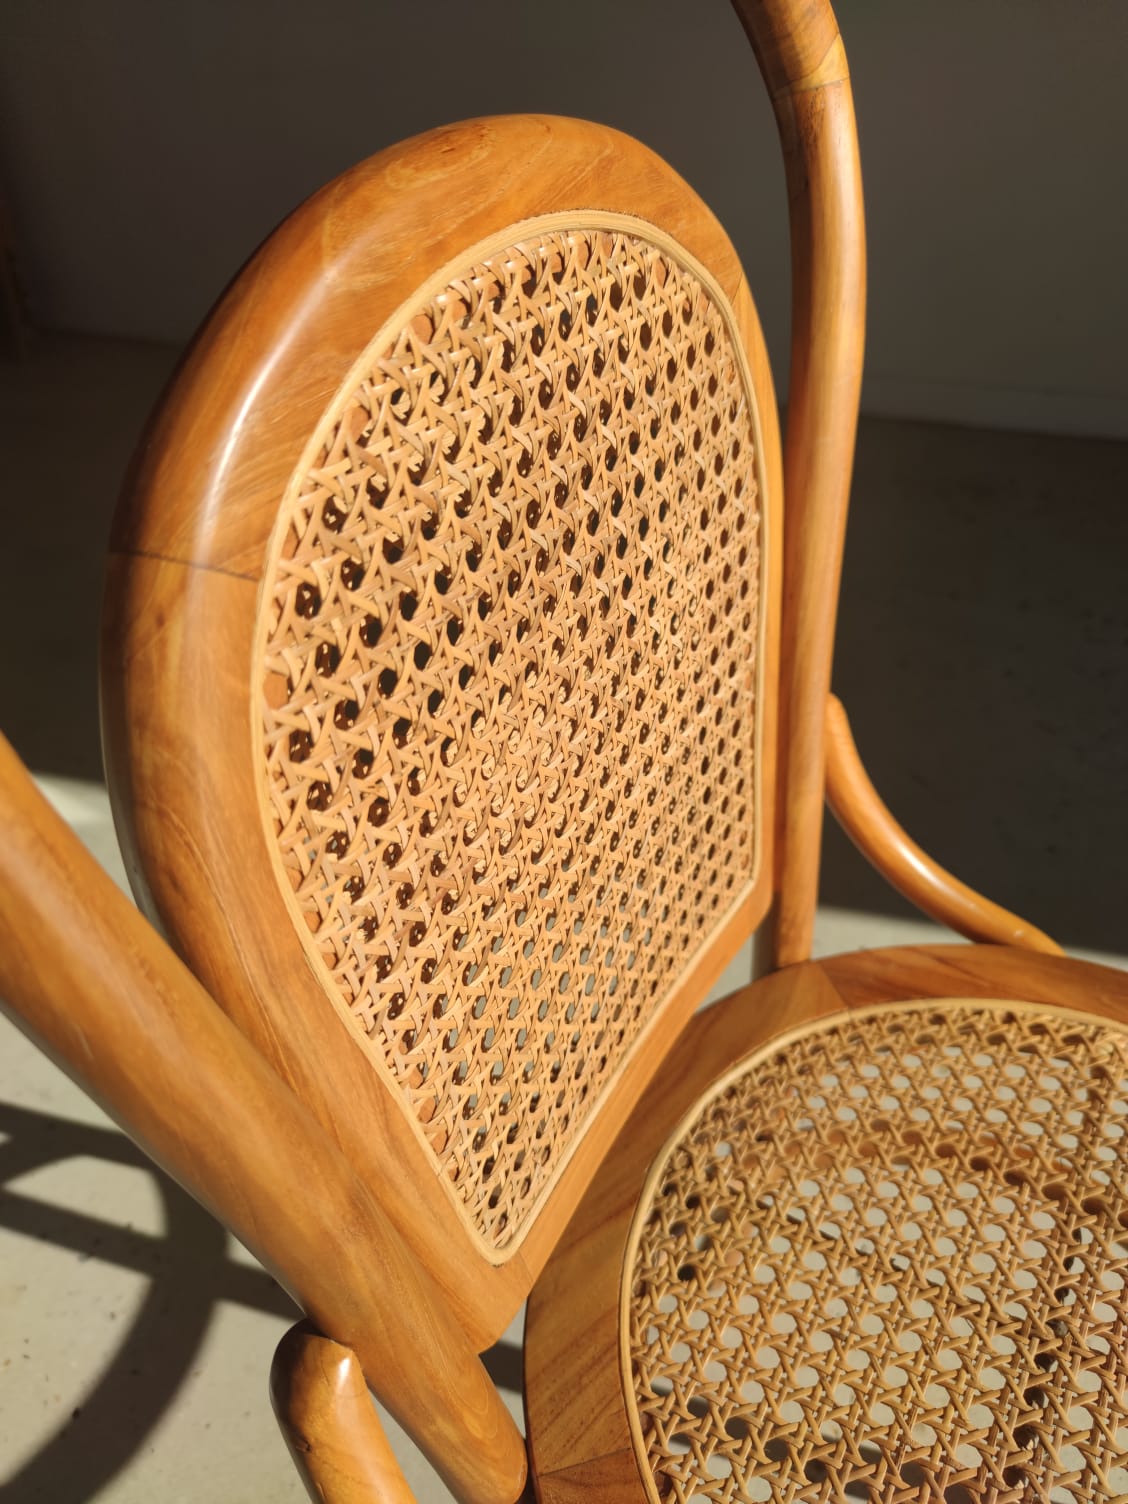 Chaise cannée en bois naturel